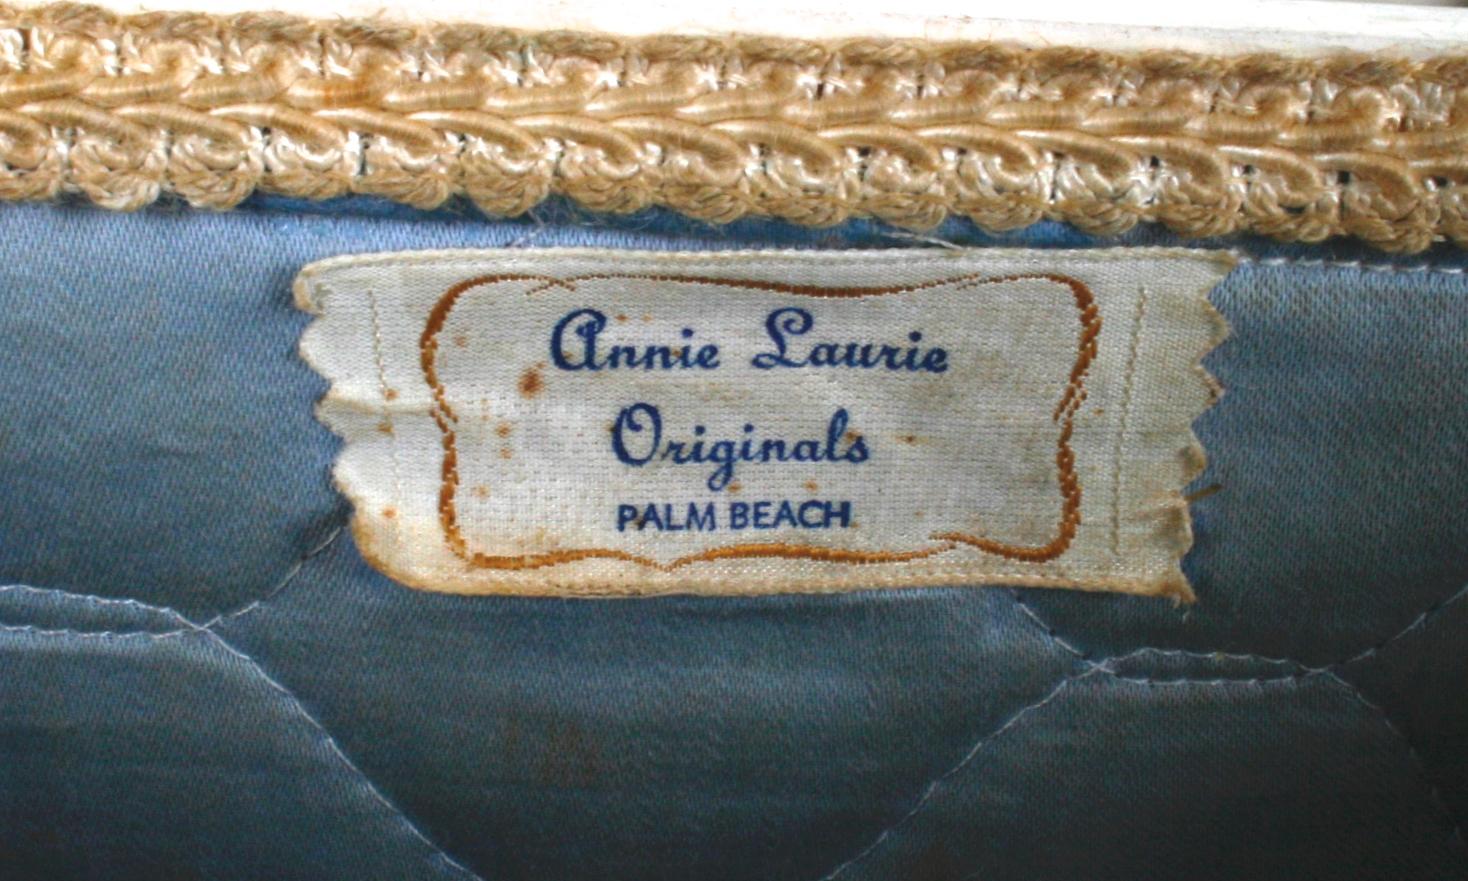 Raised Decoupage Box Handbag by Annie Laurie of Palm Beach 1